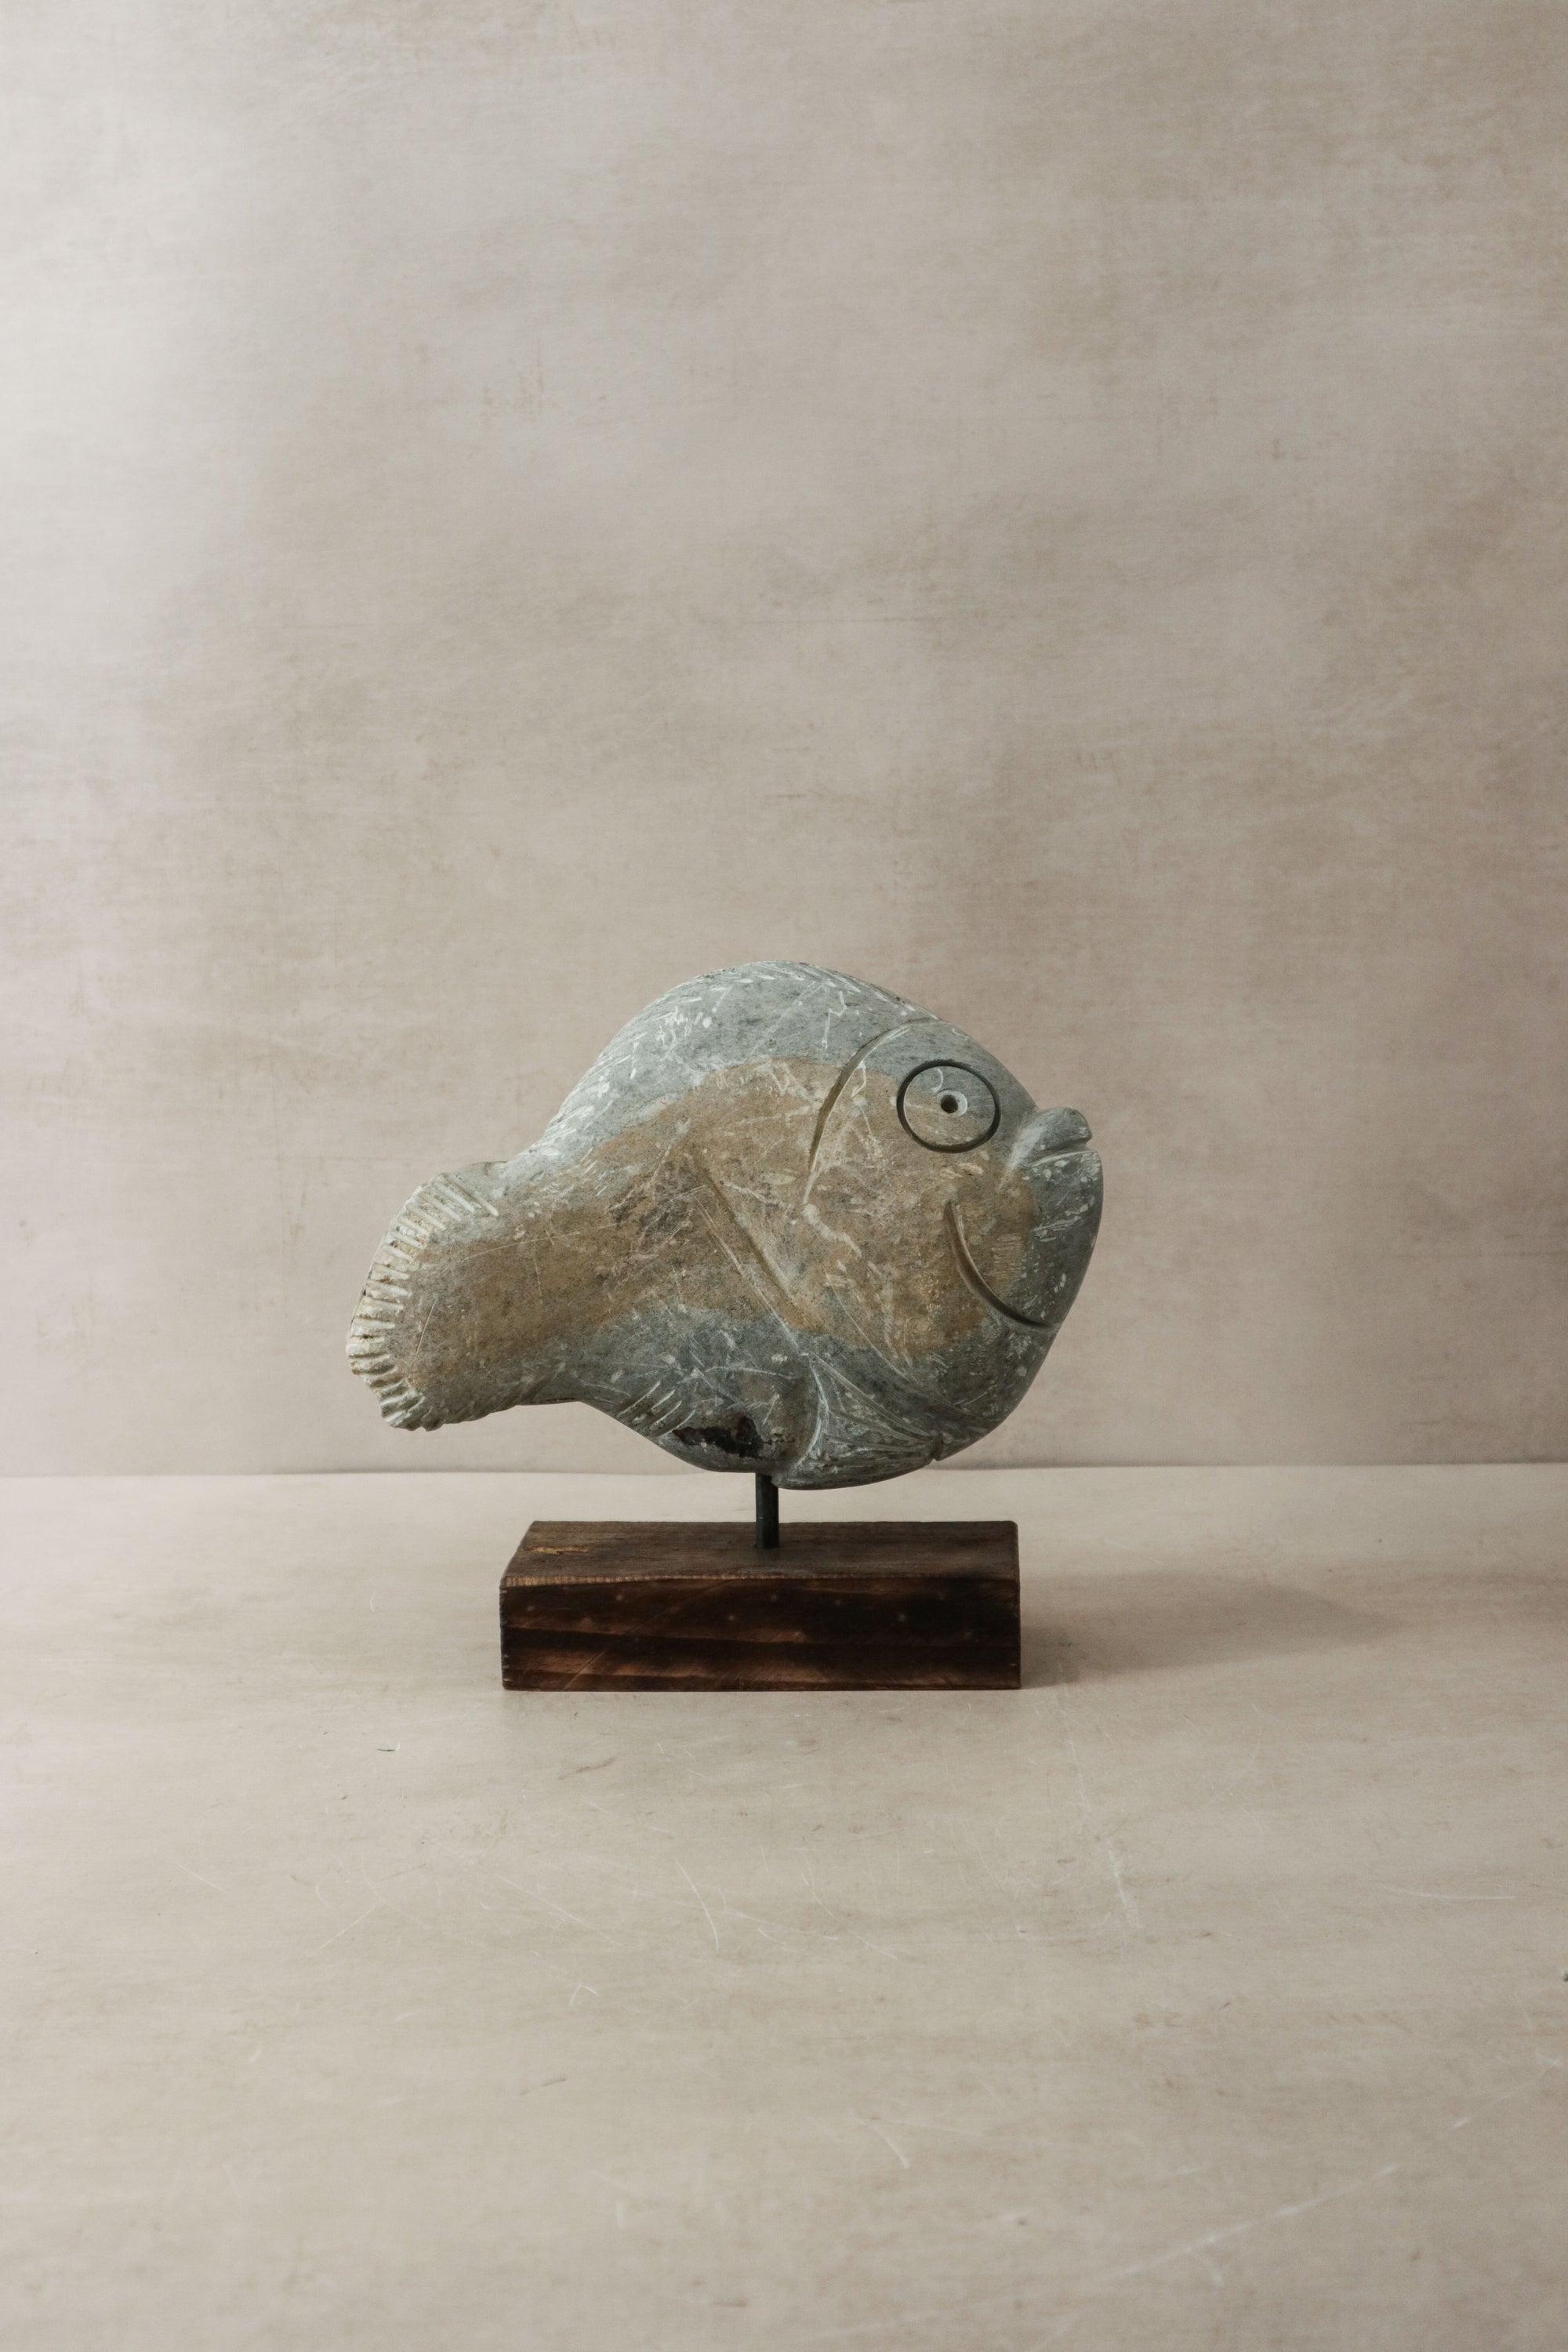 Stone Fish Sculpture - Zimbabwe - 33.4